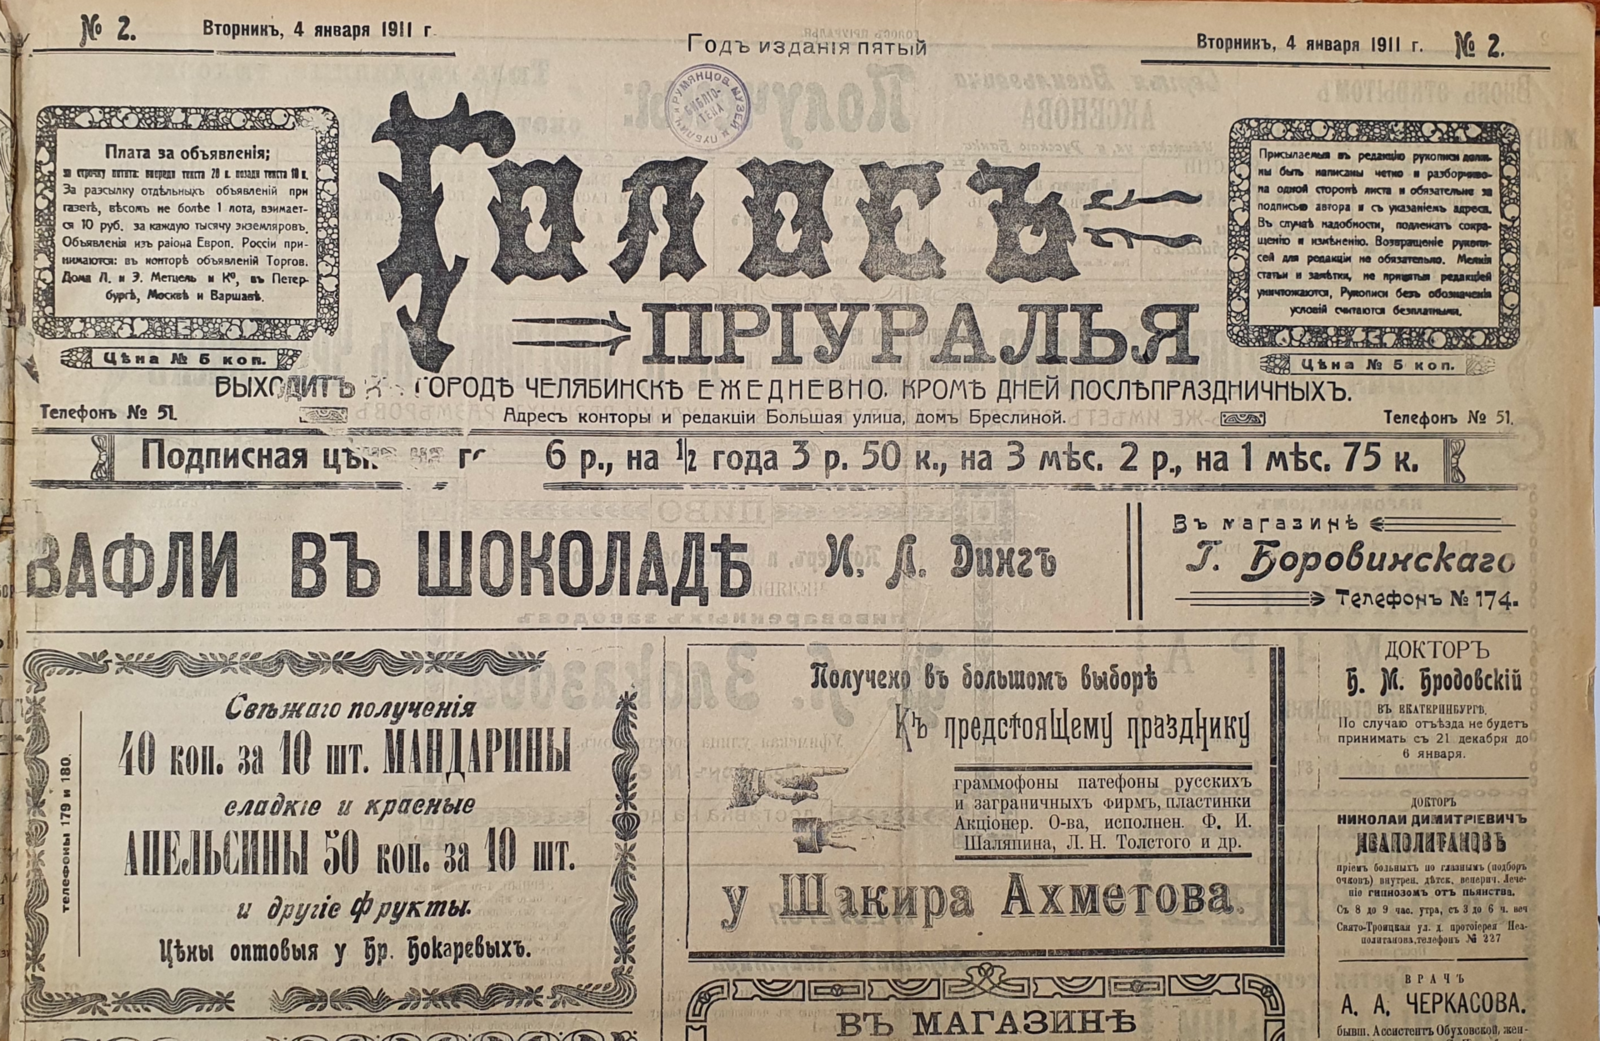 Эмблема газеты, выпуск от 4 января 1911 г. Общественное достояние (википедия)